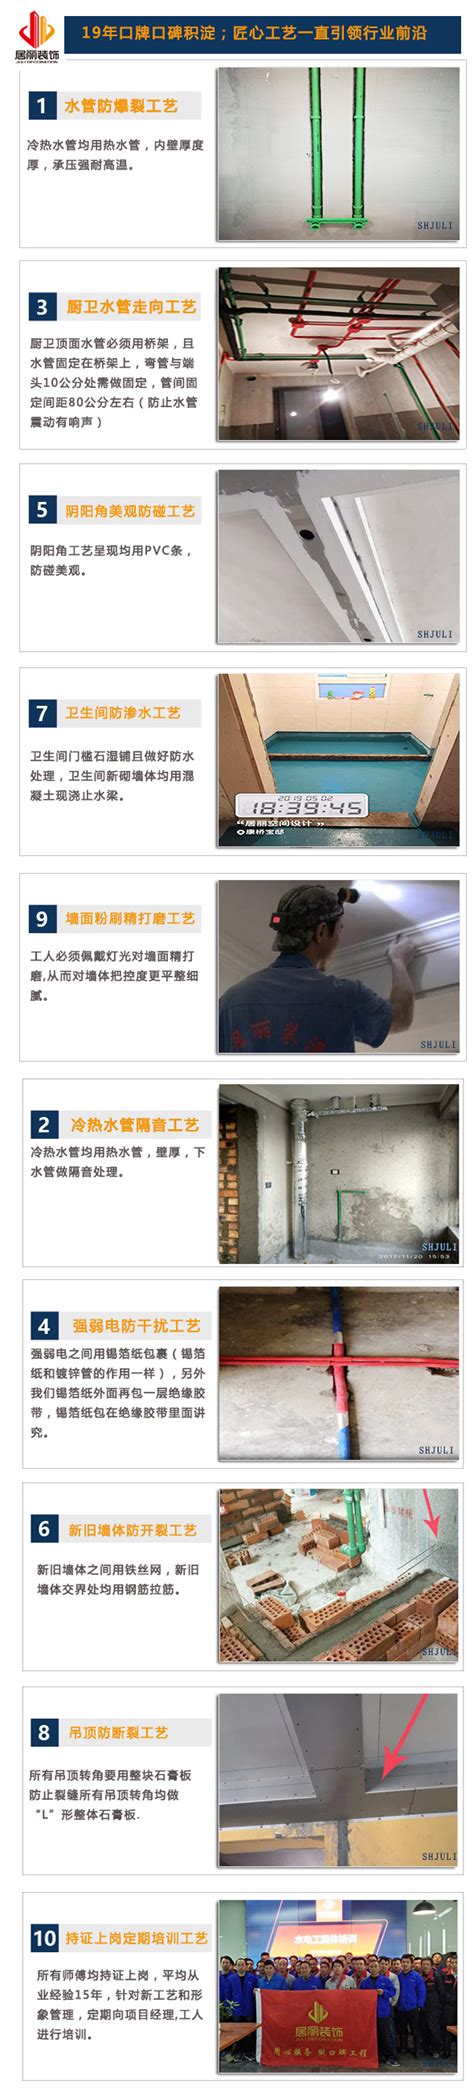 装修、家具设计标准尺寸参考 - lenglingx的个人页面 - OSCHINA - 中文开源技术交流社区